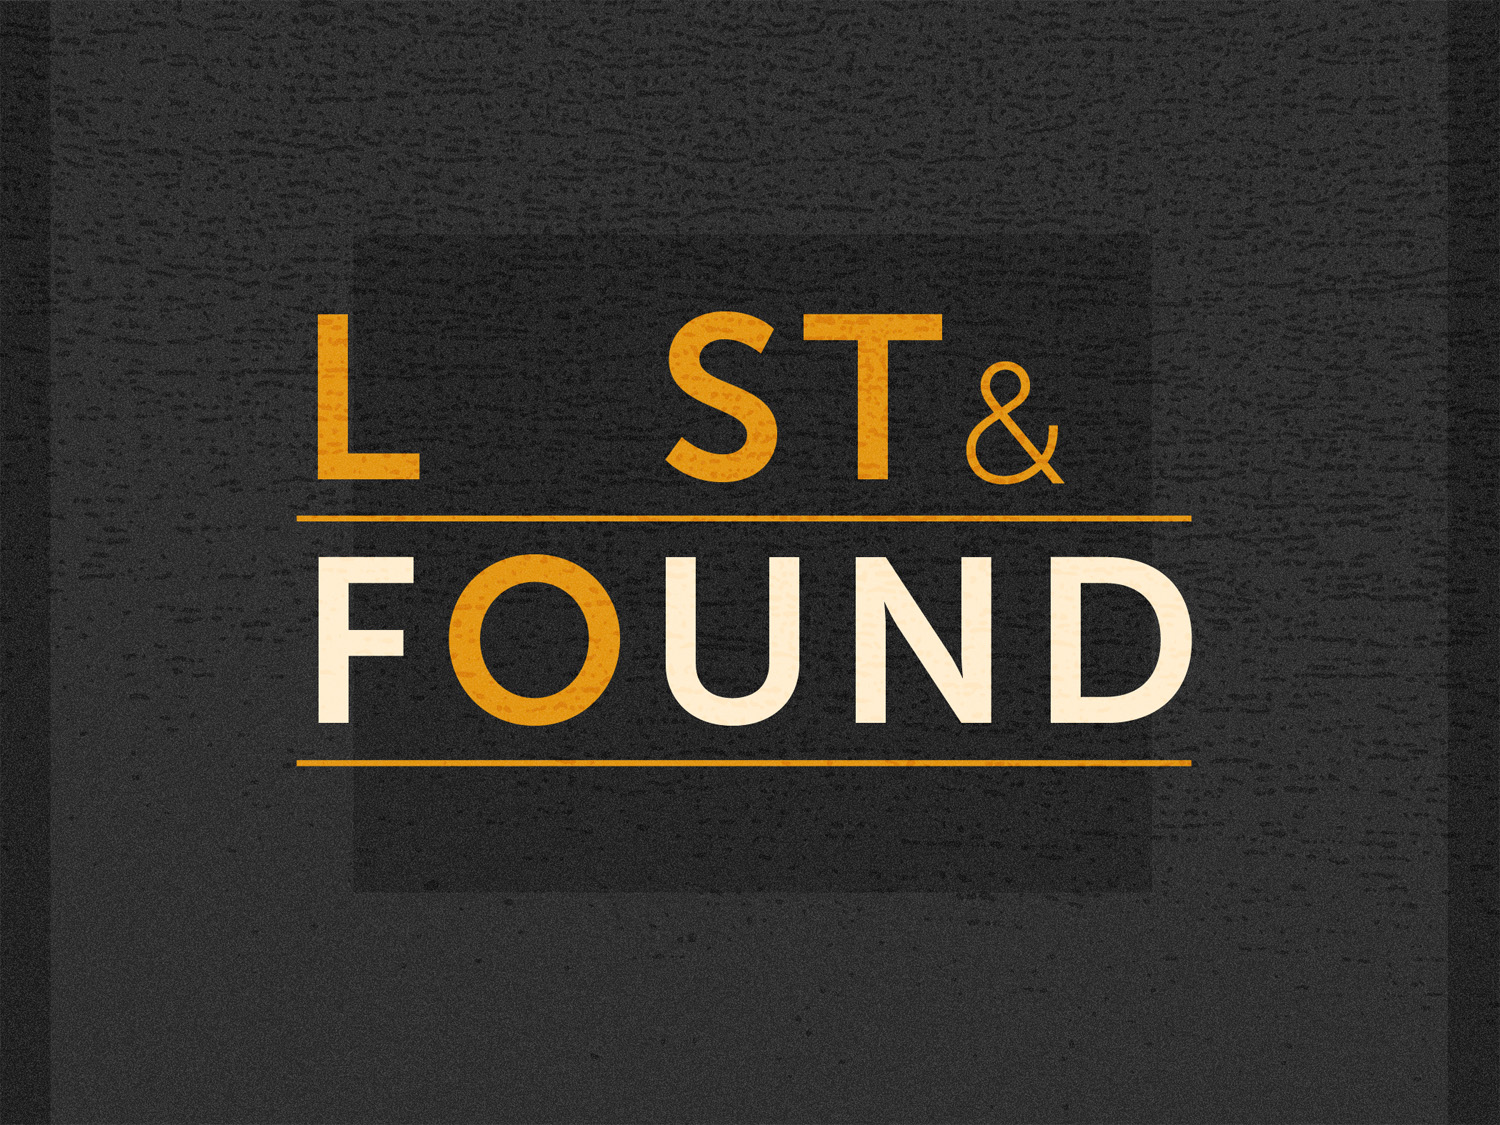 Lost & Found Part 1